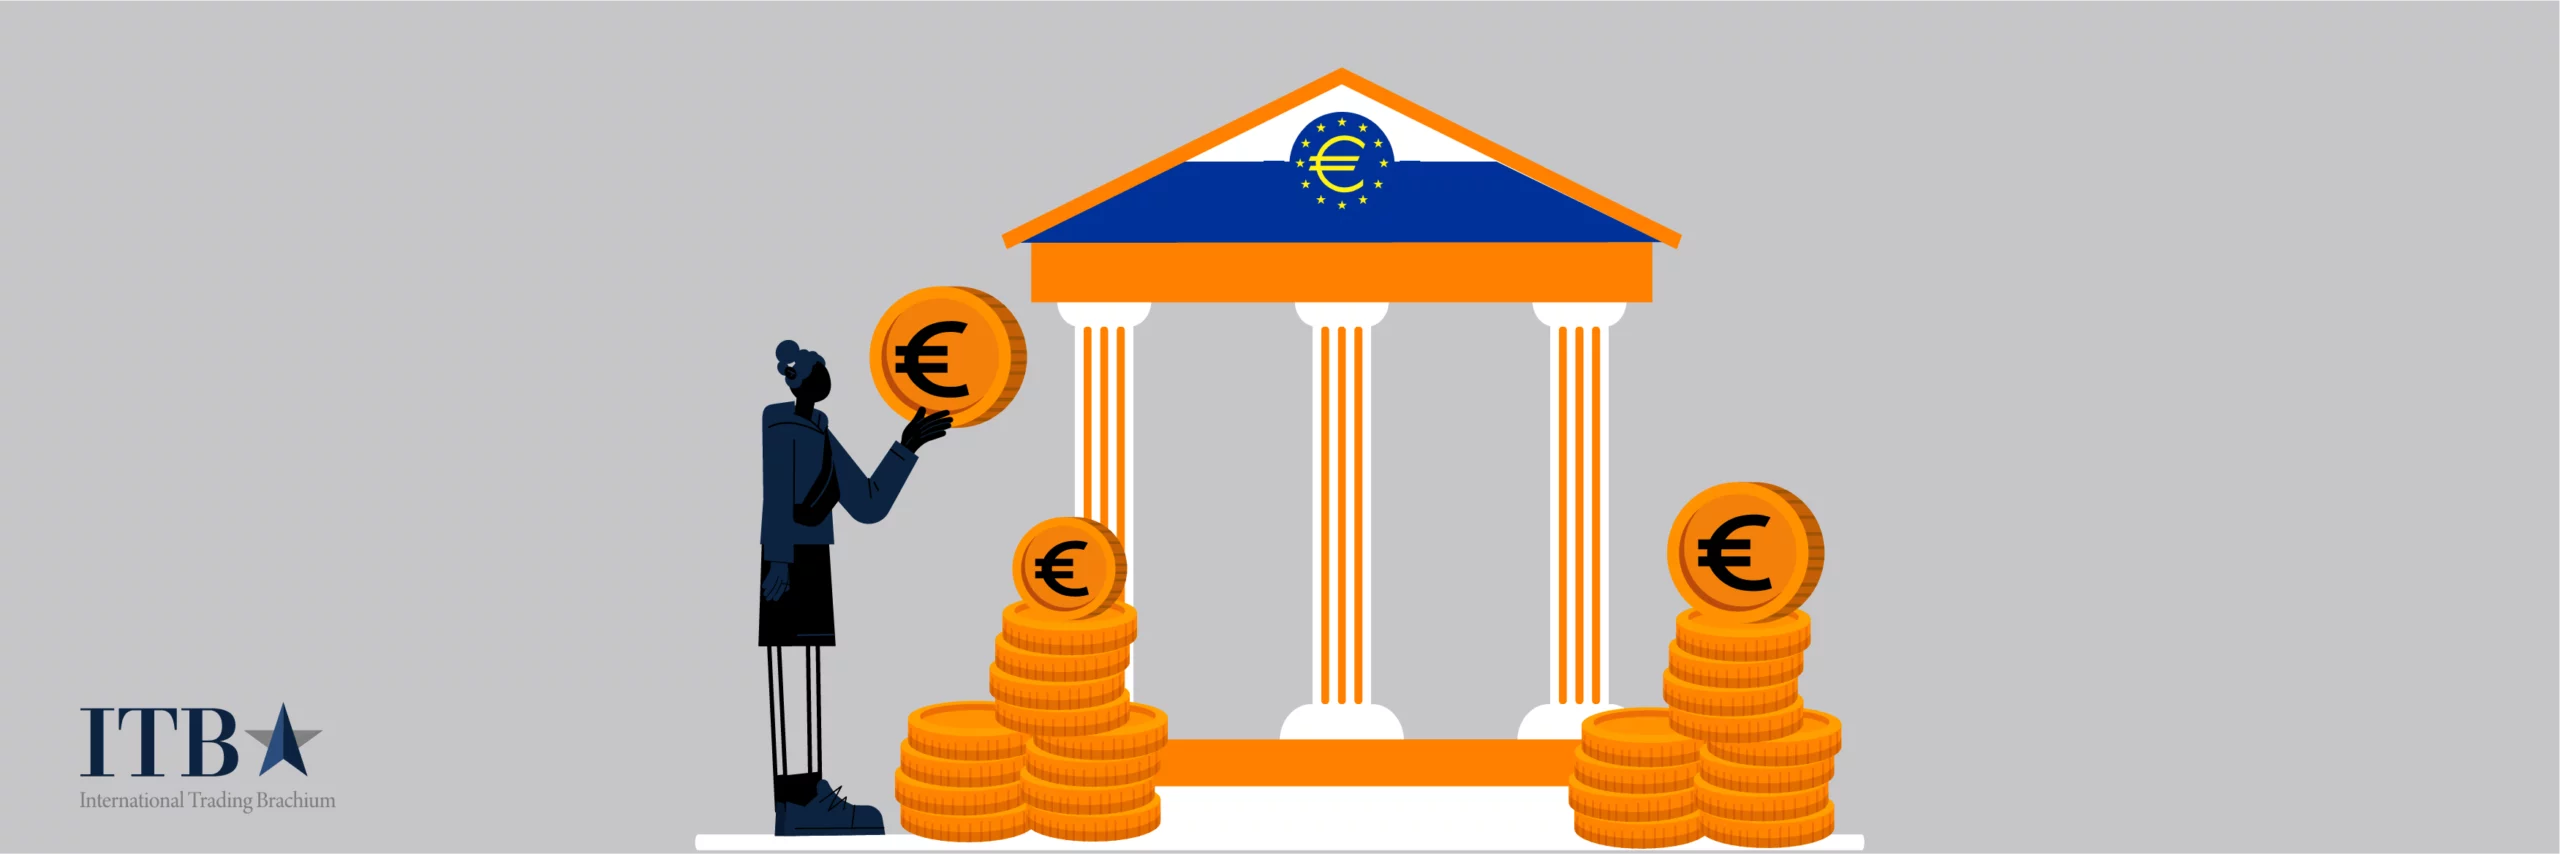 نقش بانک مرکزی اروپا برروی IBEX35